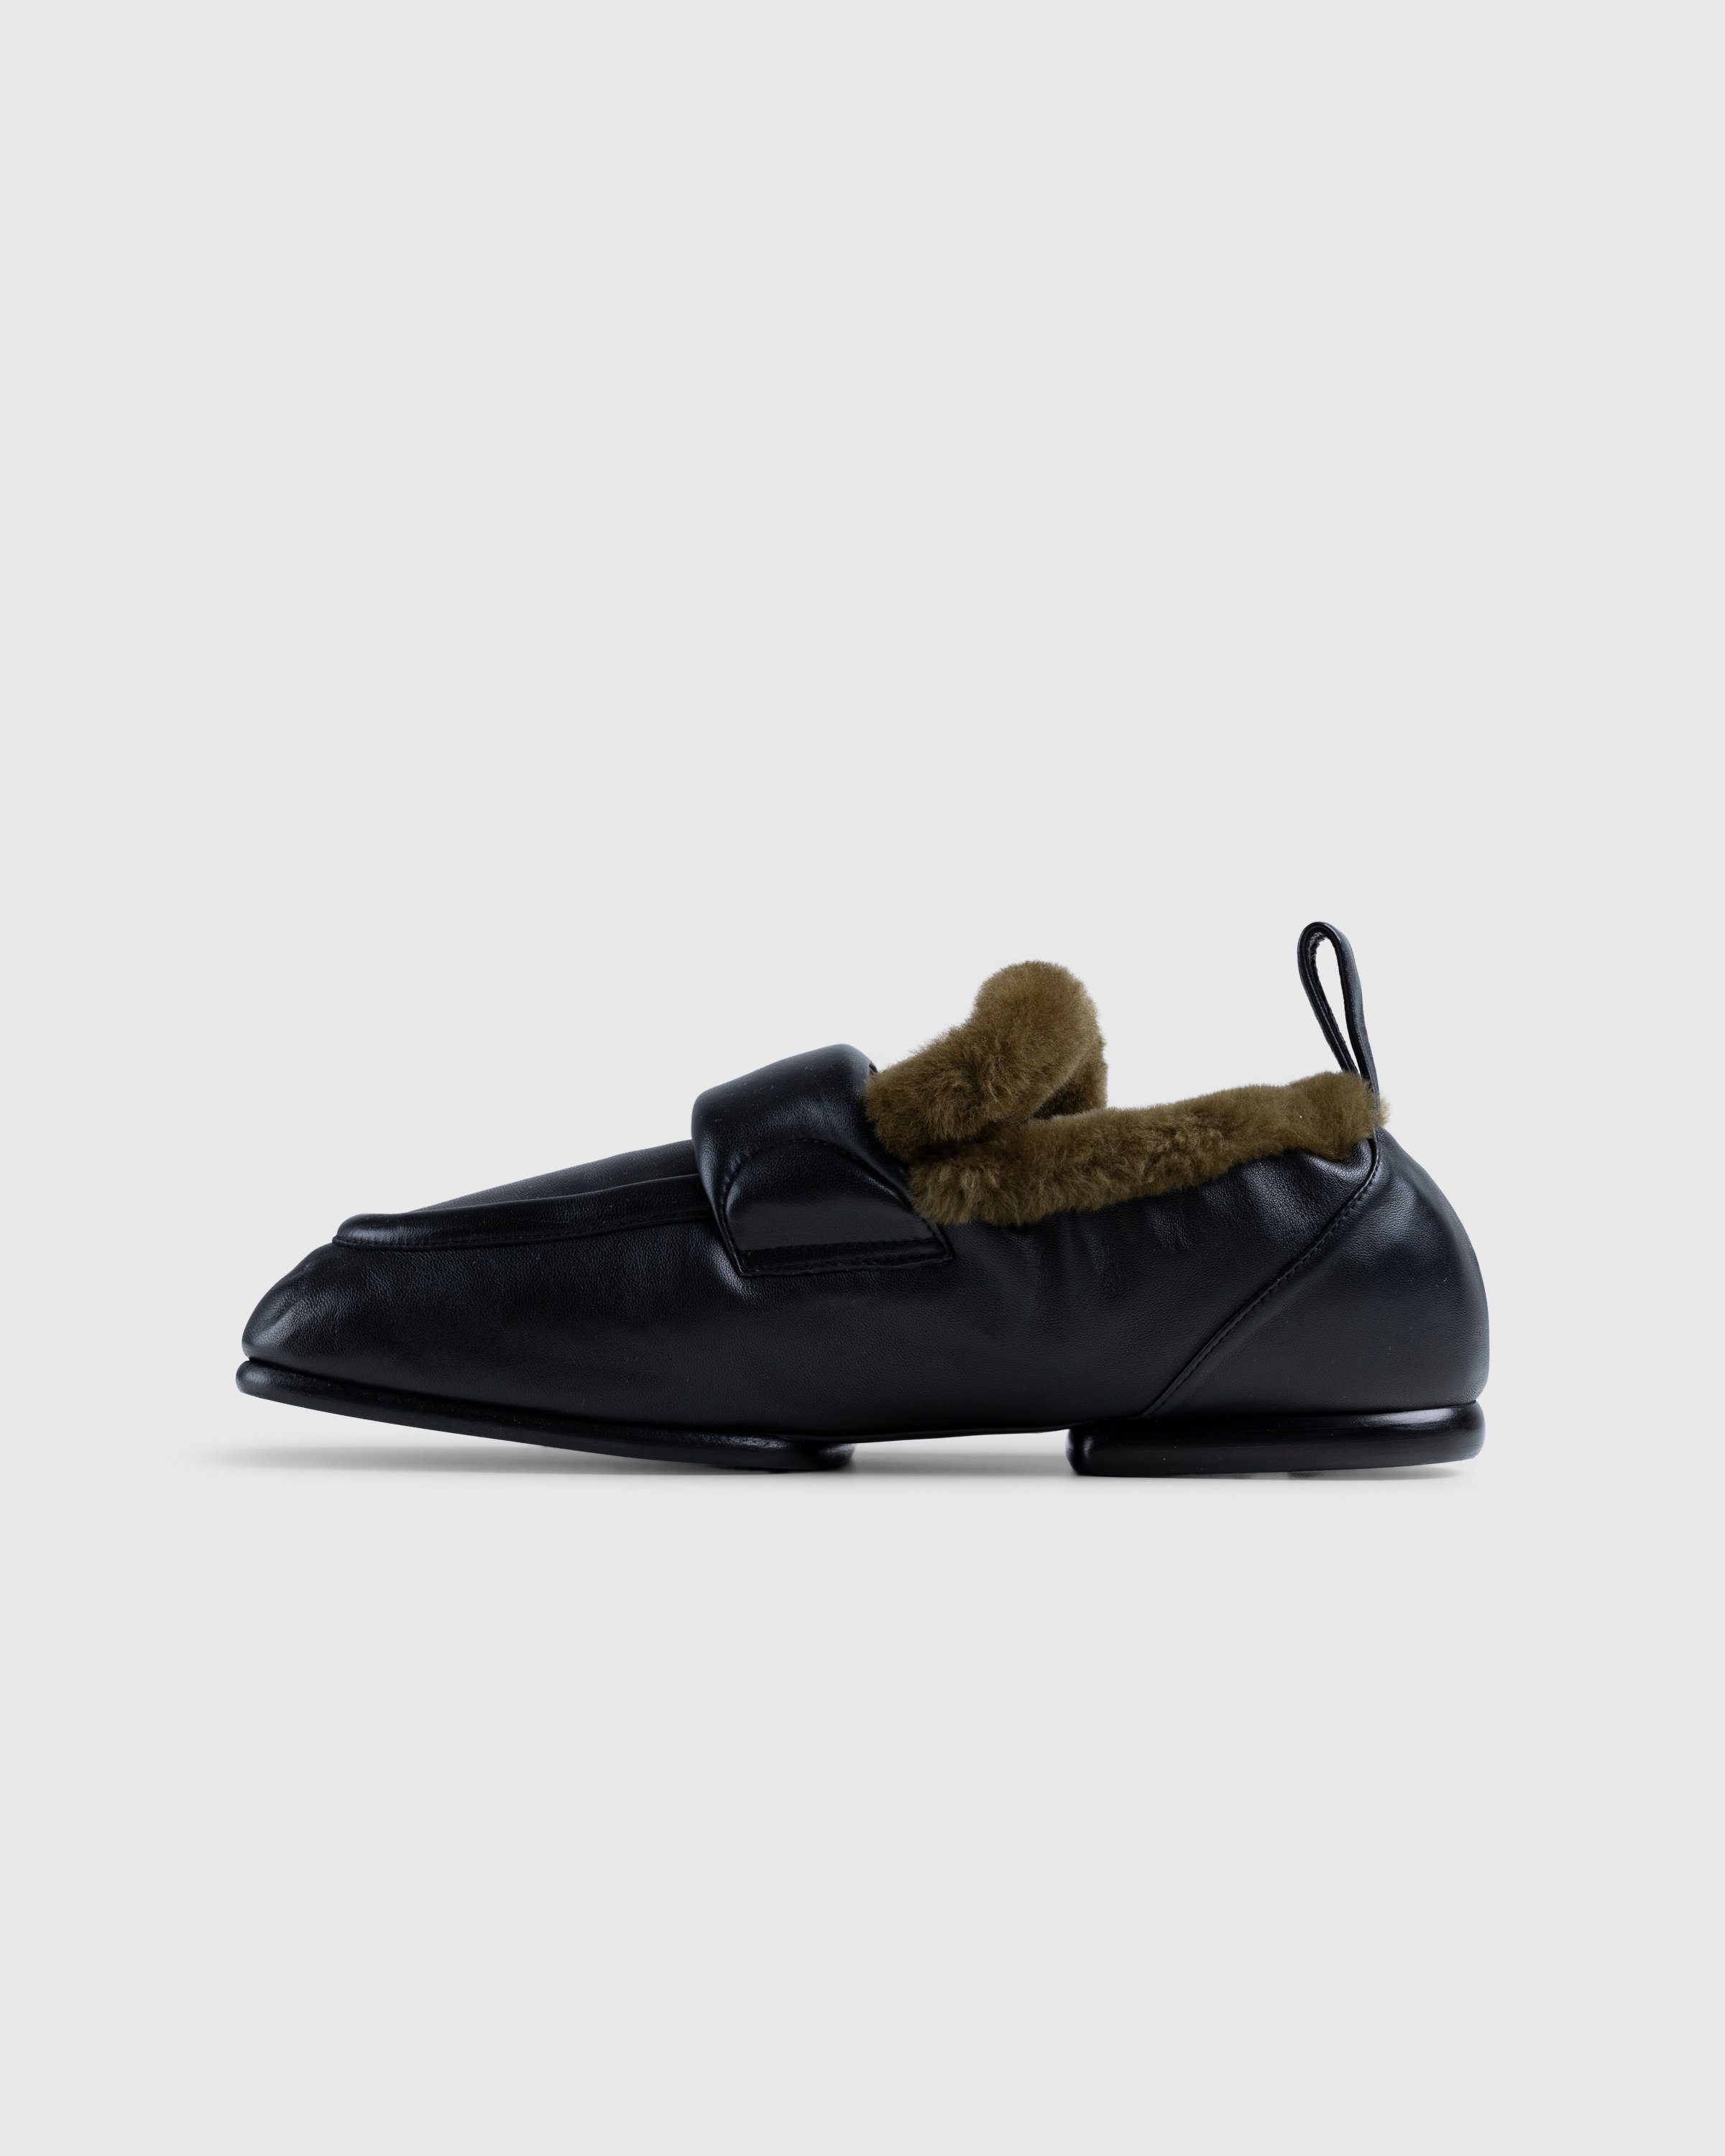 Dries van Noten - Padded Faux Fur Loafers Black - Footwear - Black - Image 2